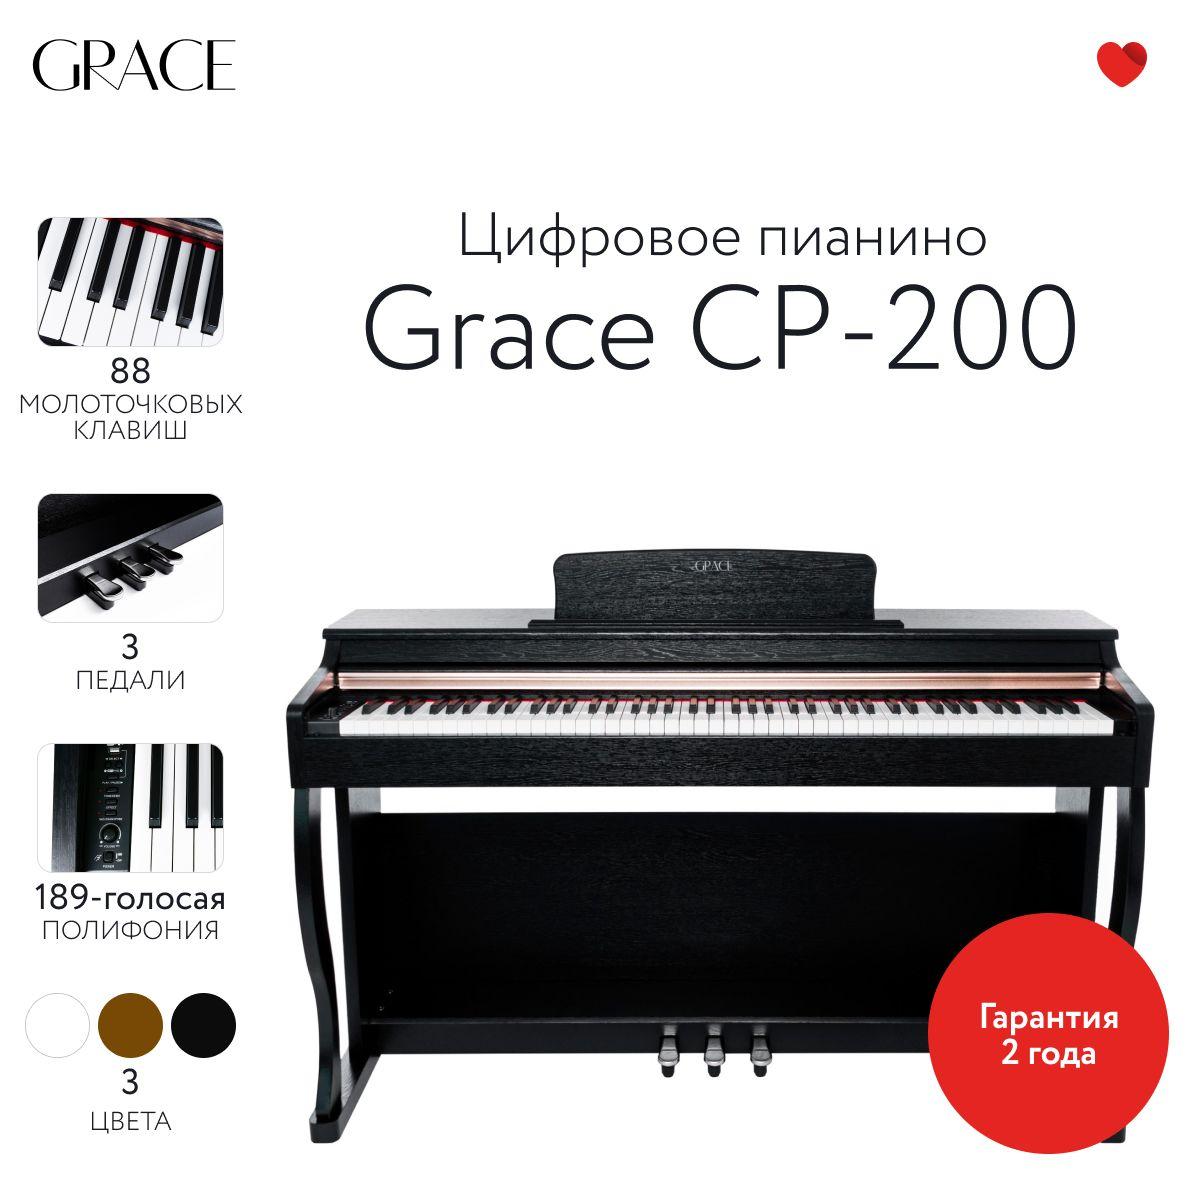 Grace | Grace CP-200 BK - Цифровое пианино в корпусе с тремя педалями